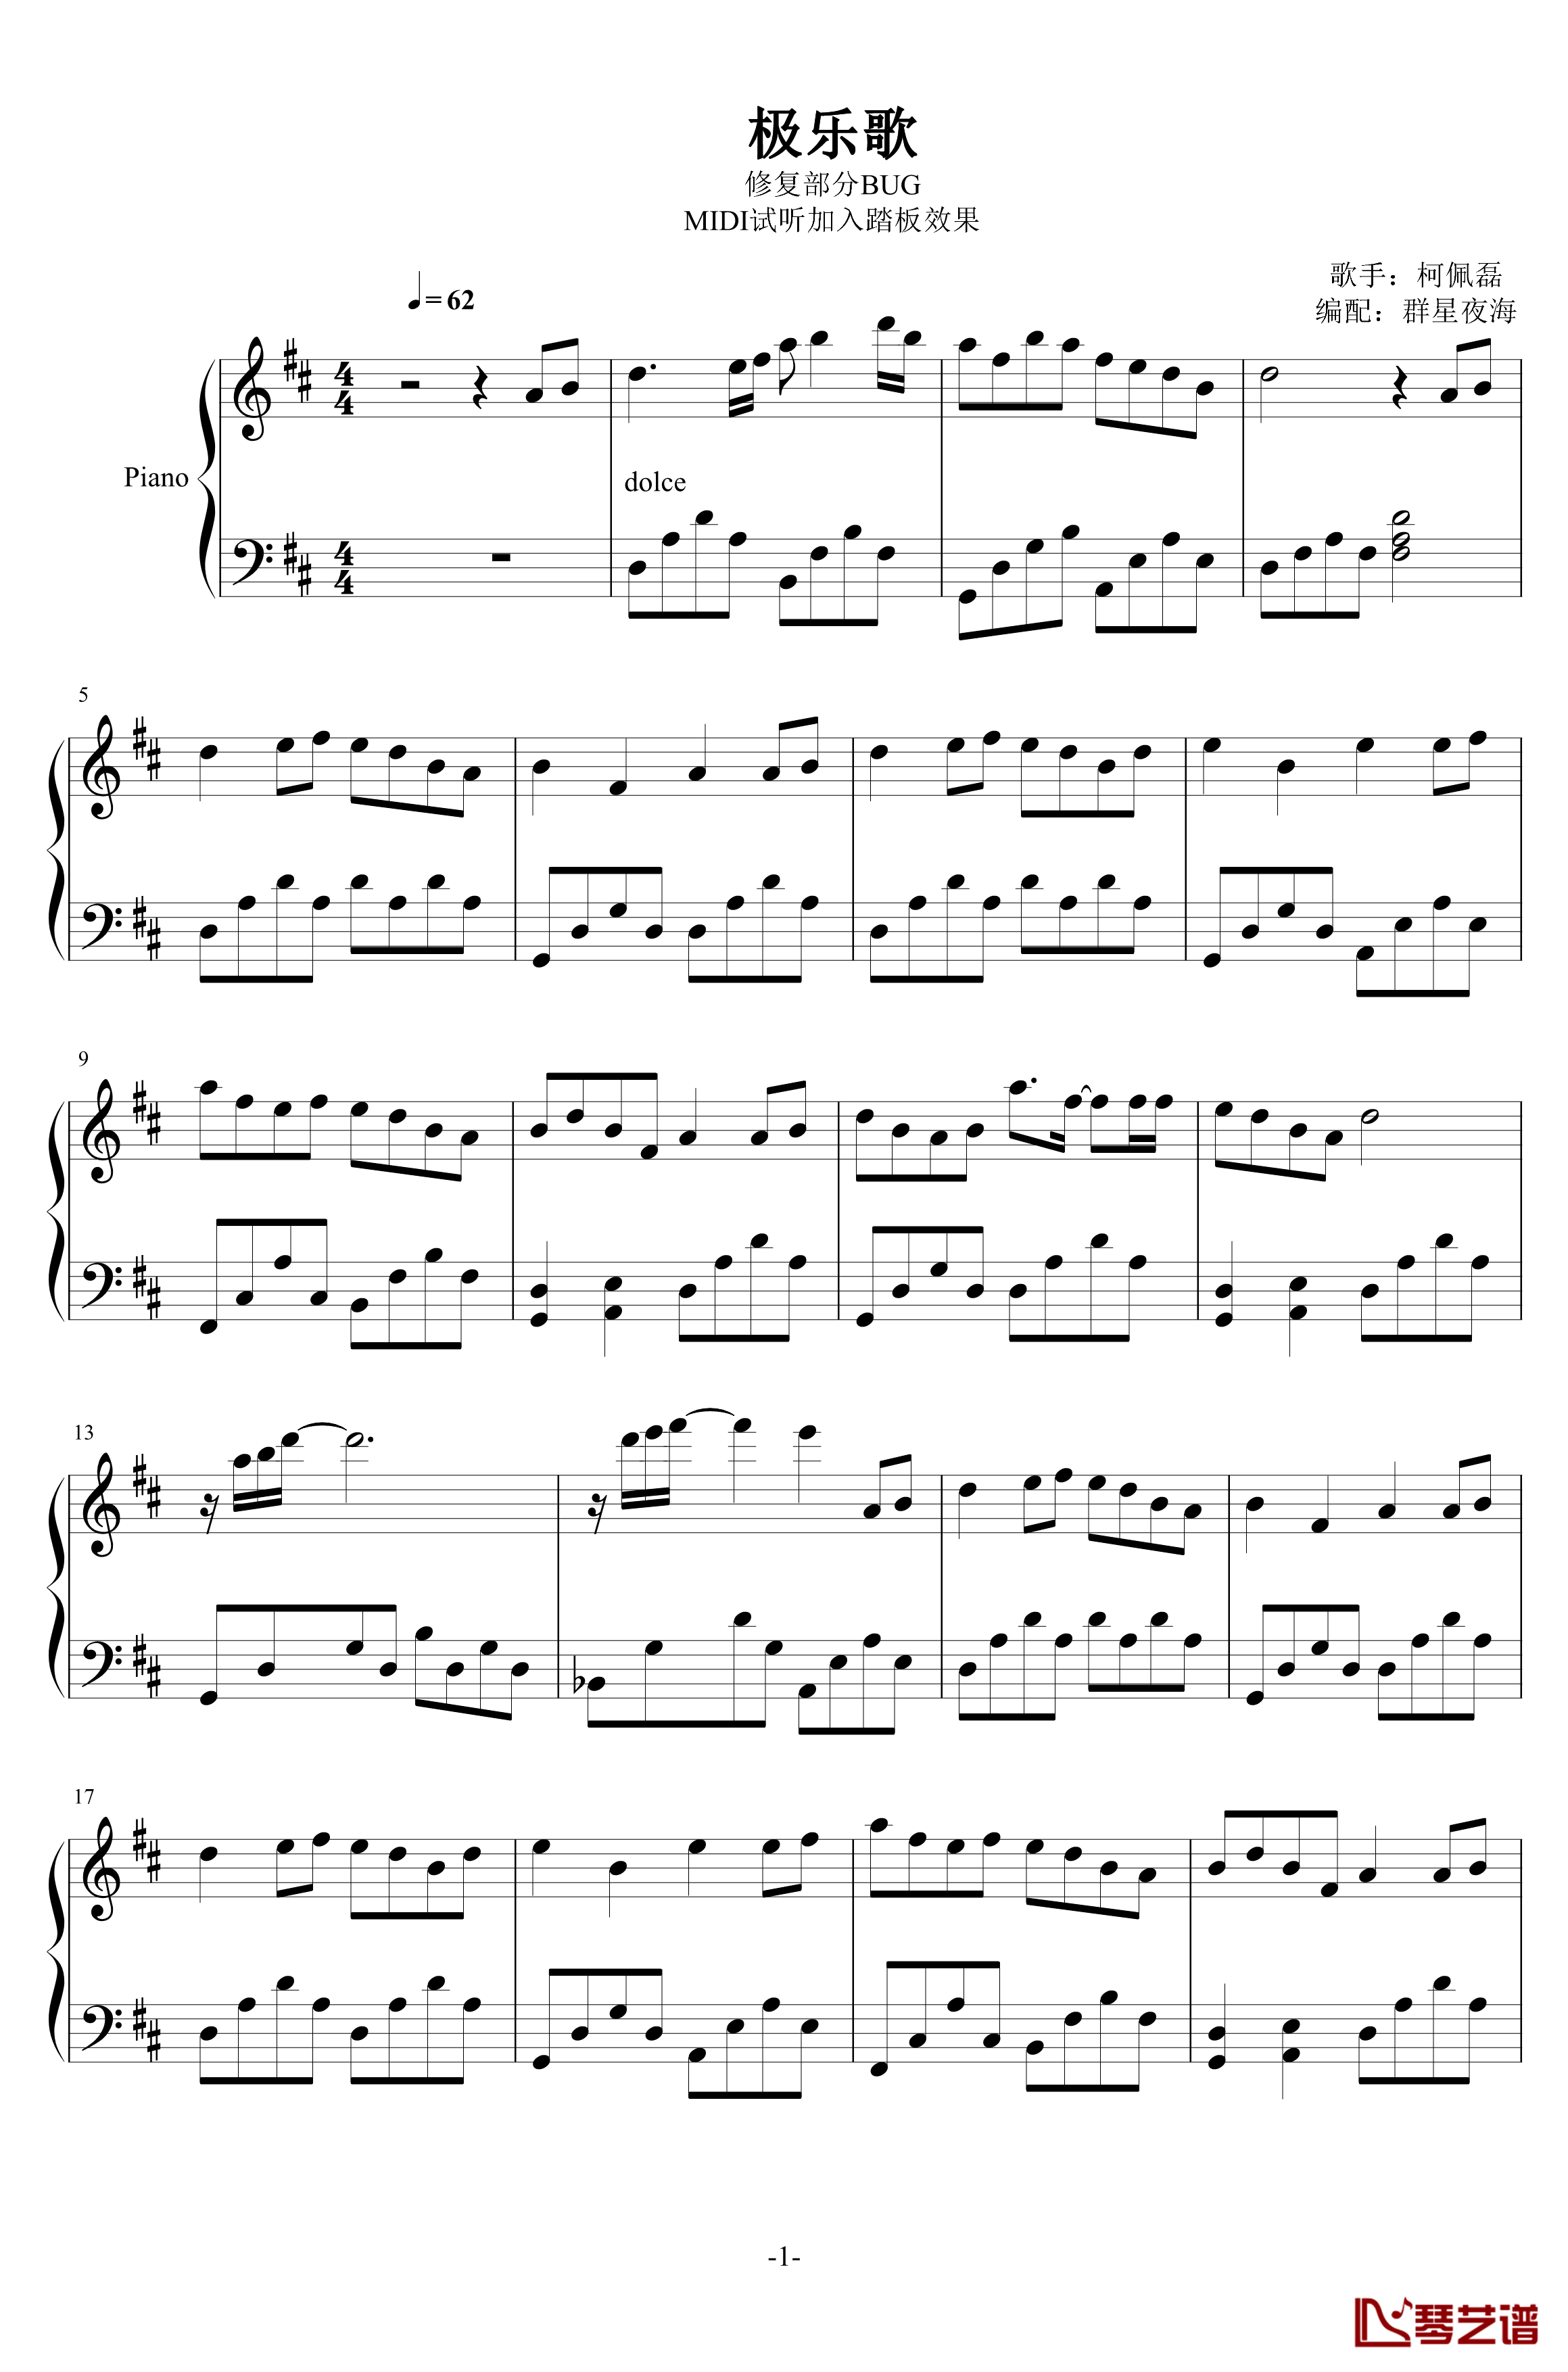 极乐歌钢琴谱-1.0完美版-柯佩磊